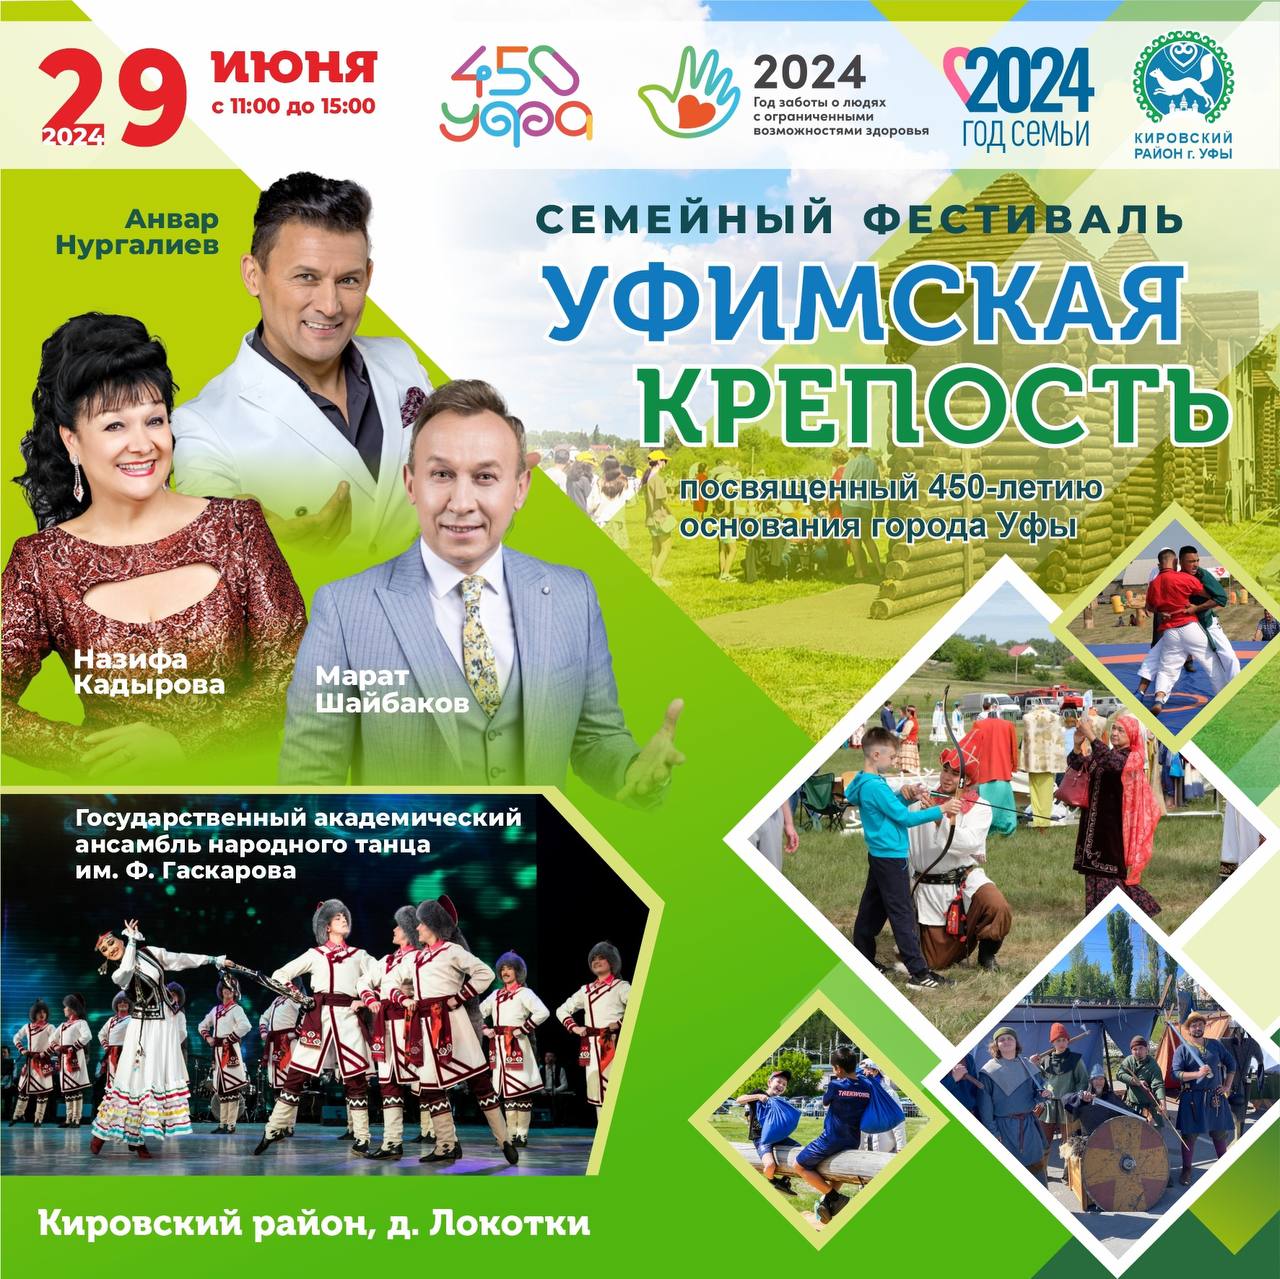 Фестиваль «Уфимская крепость» пройдёт 29 июня в деревне Локотки под Уфой